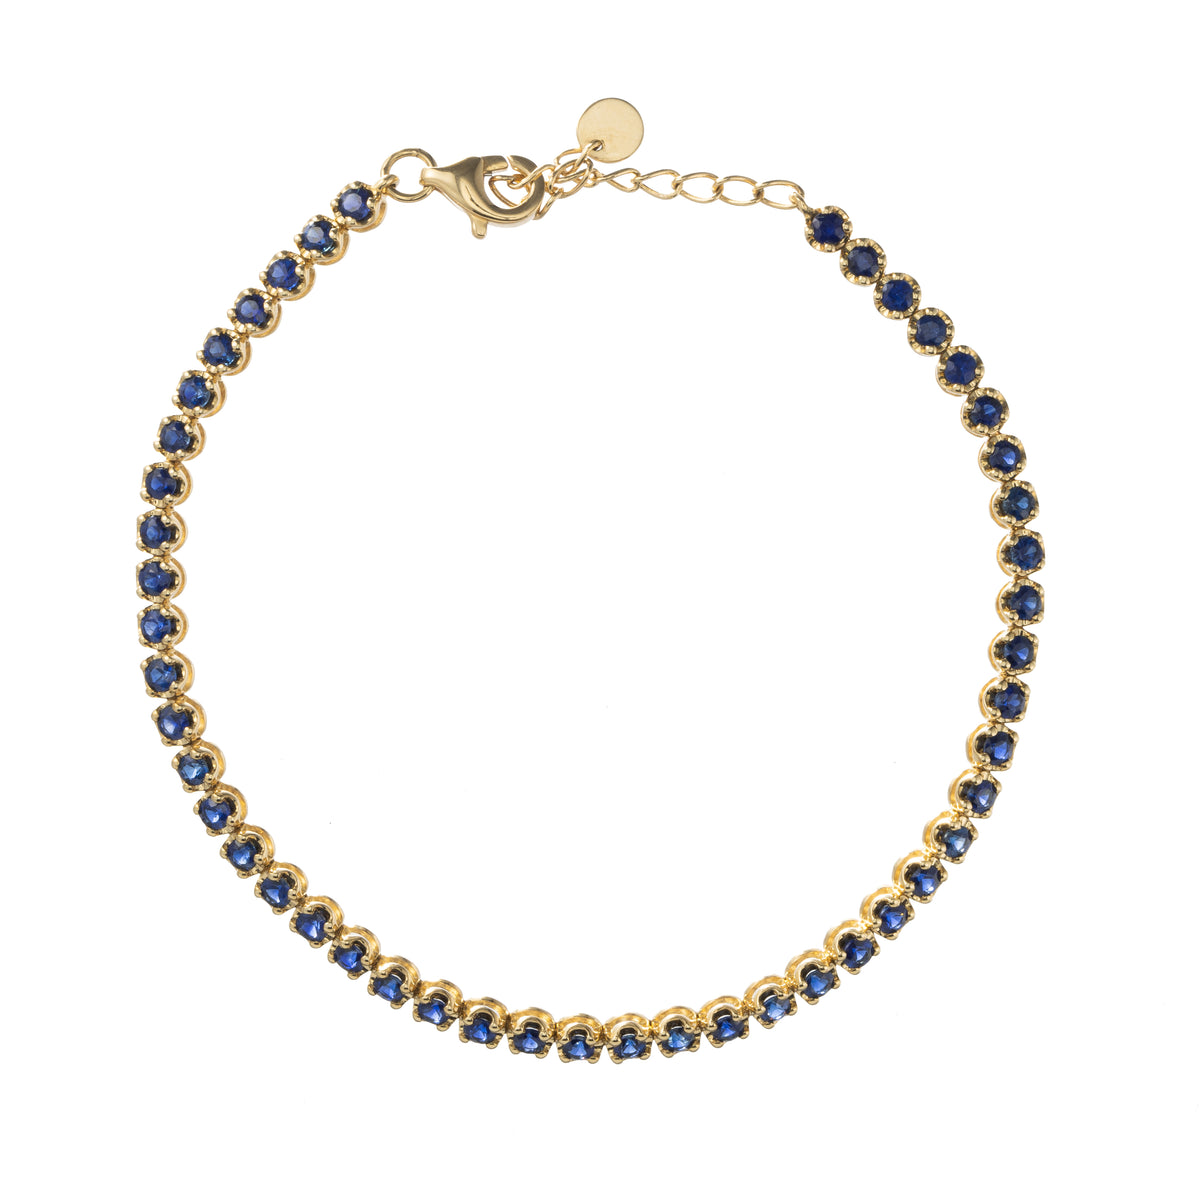 Crown Prong Blue Sapphire Tennis Bracelet